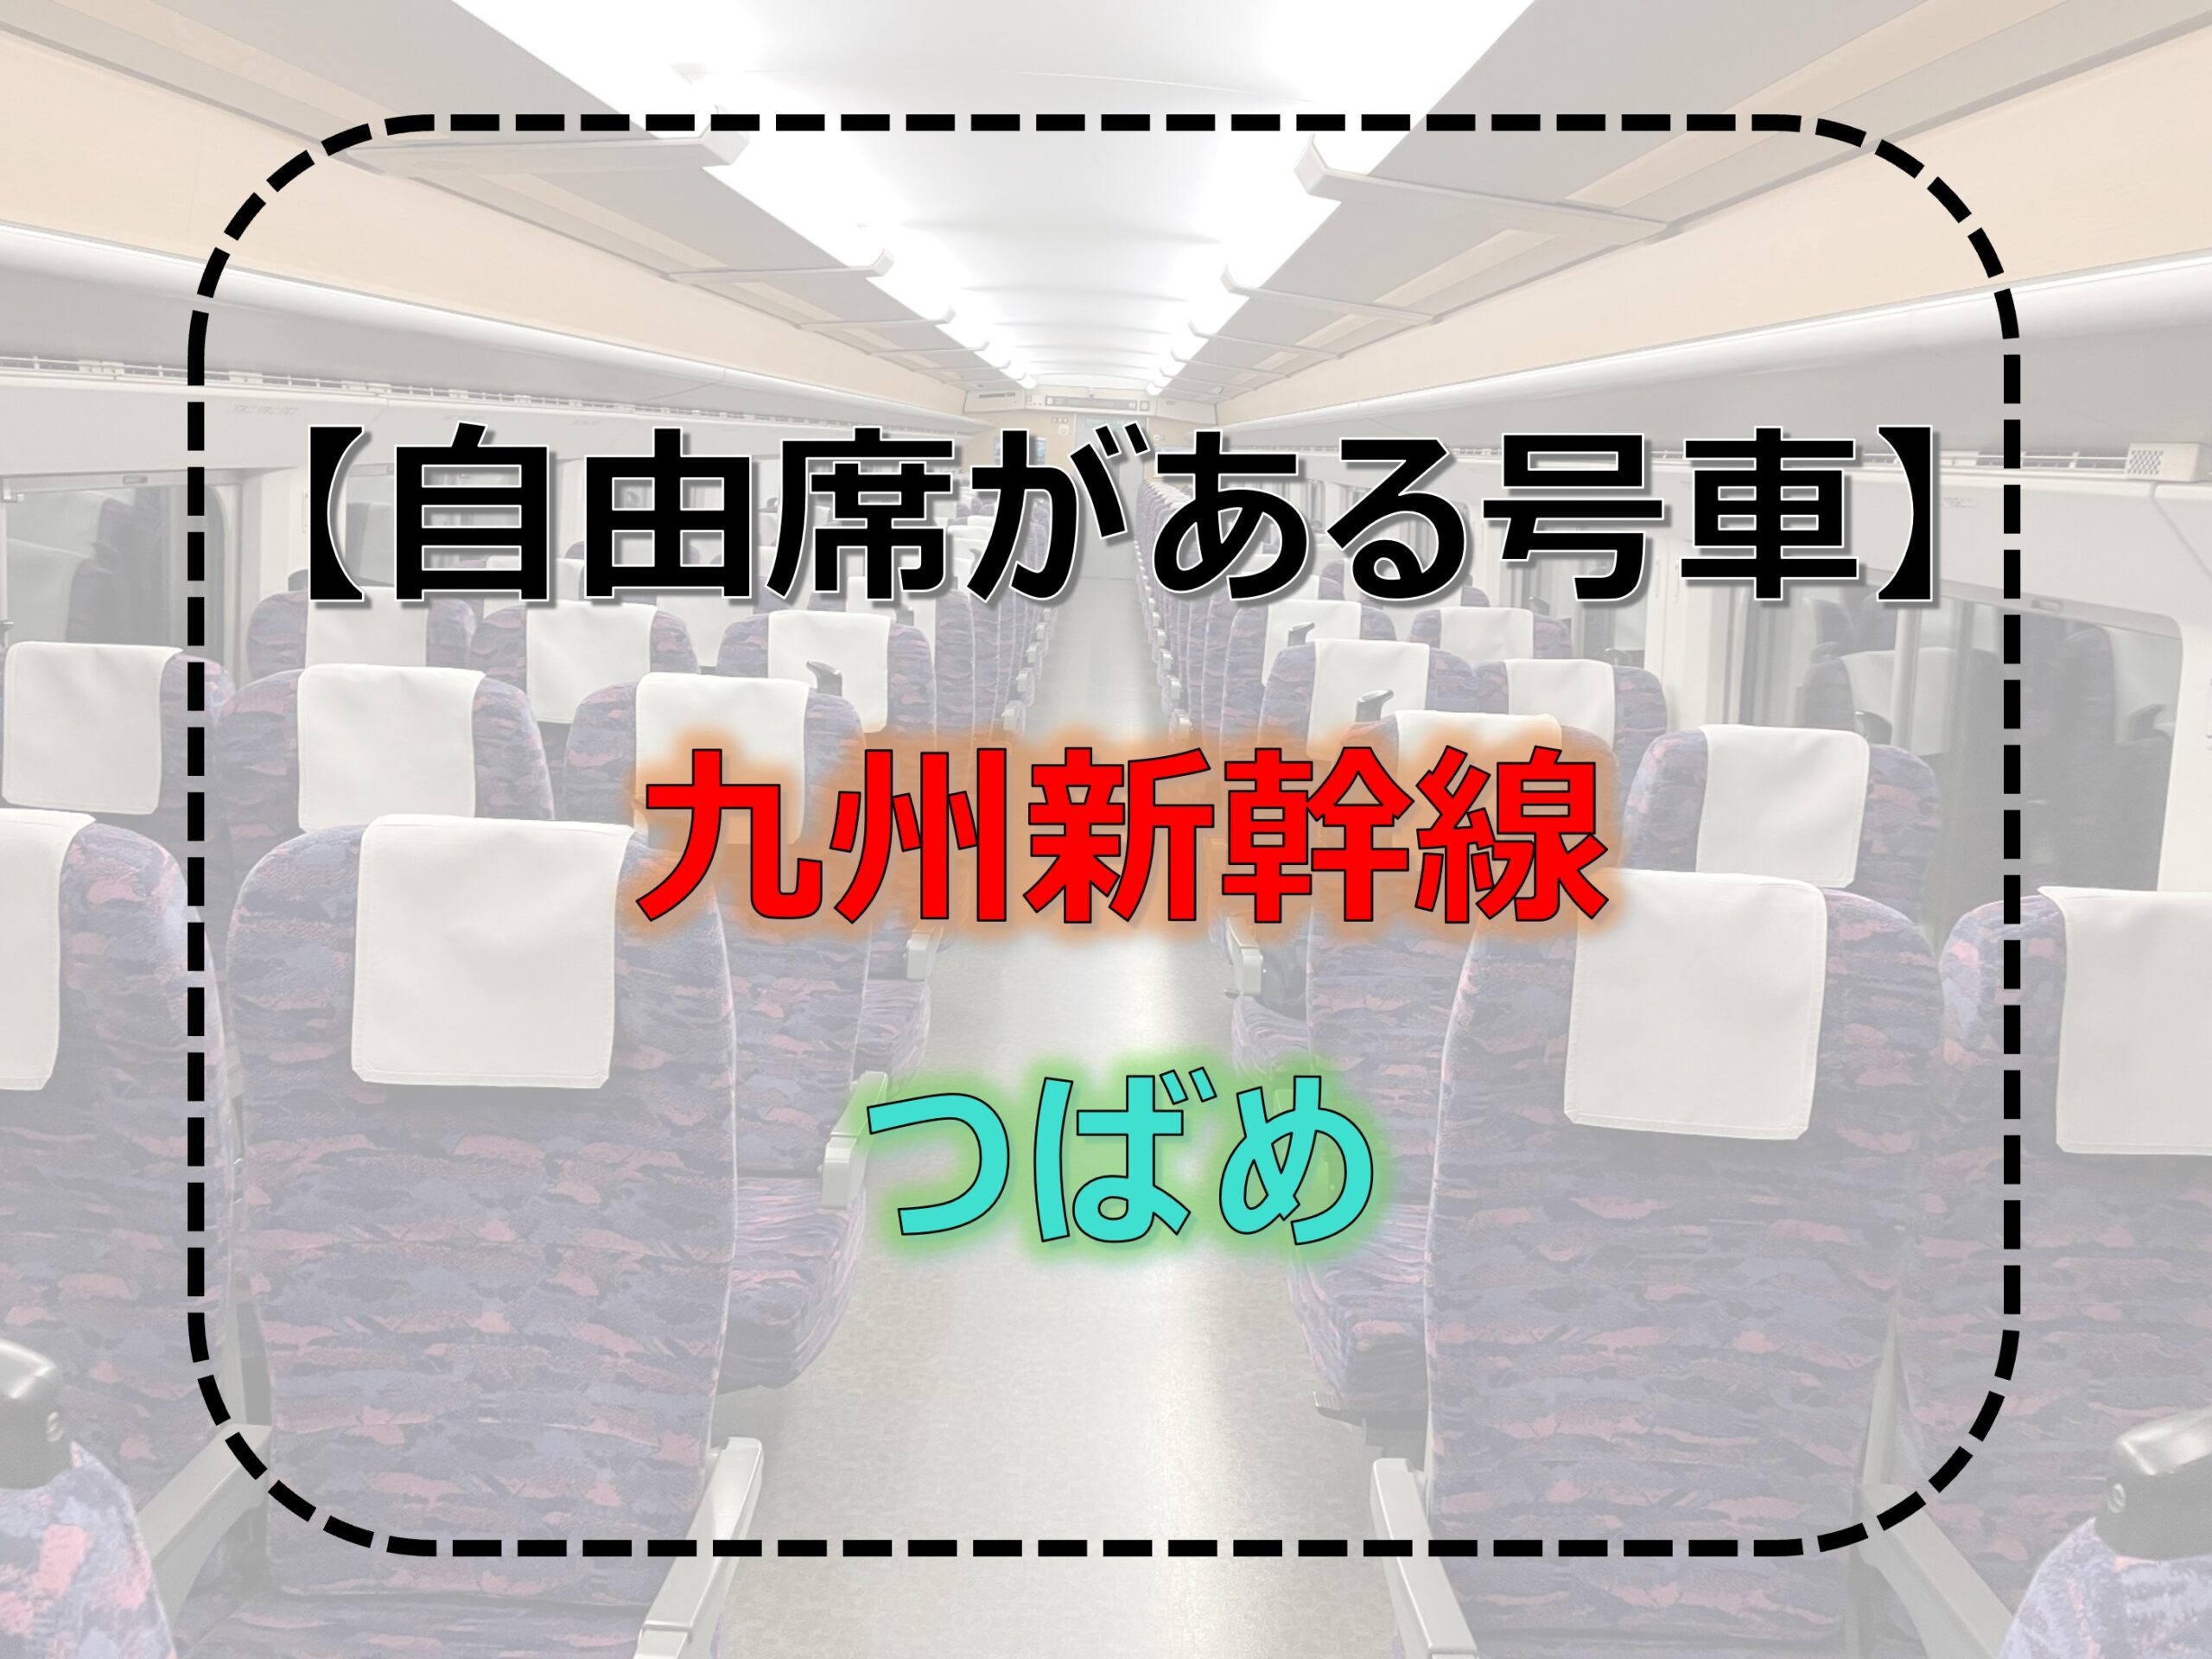 つばめ-自由席 九州新幹線-自由席 2024年度